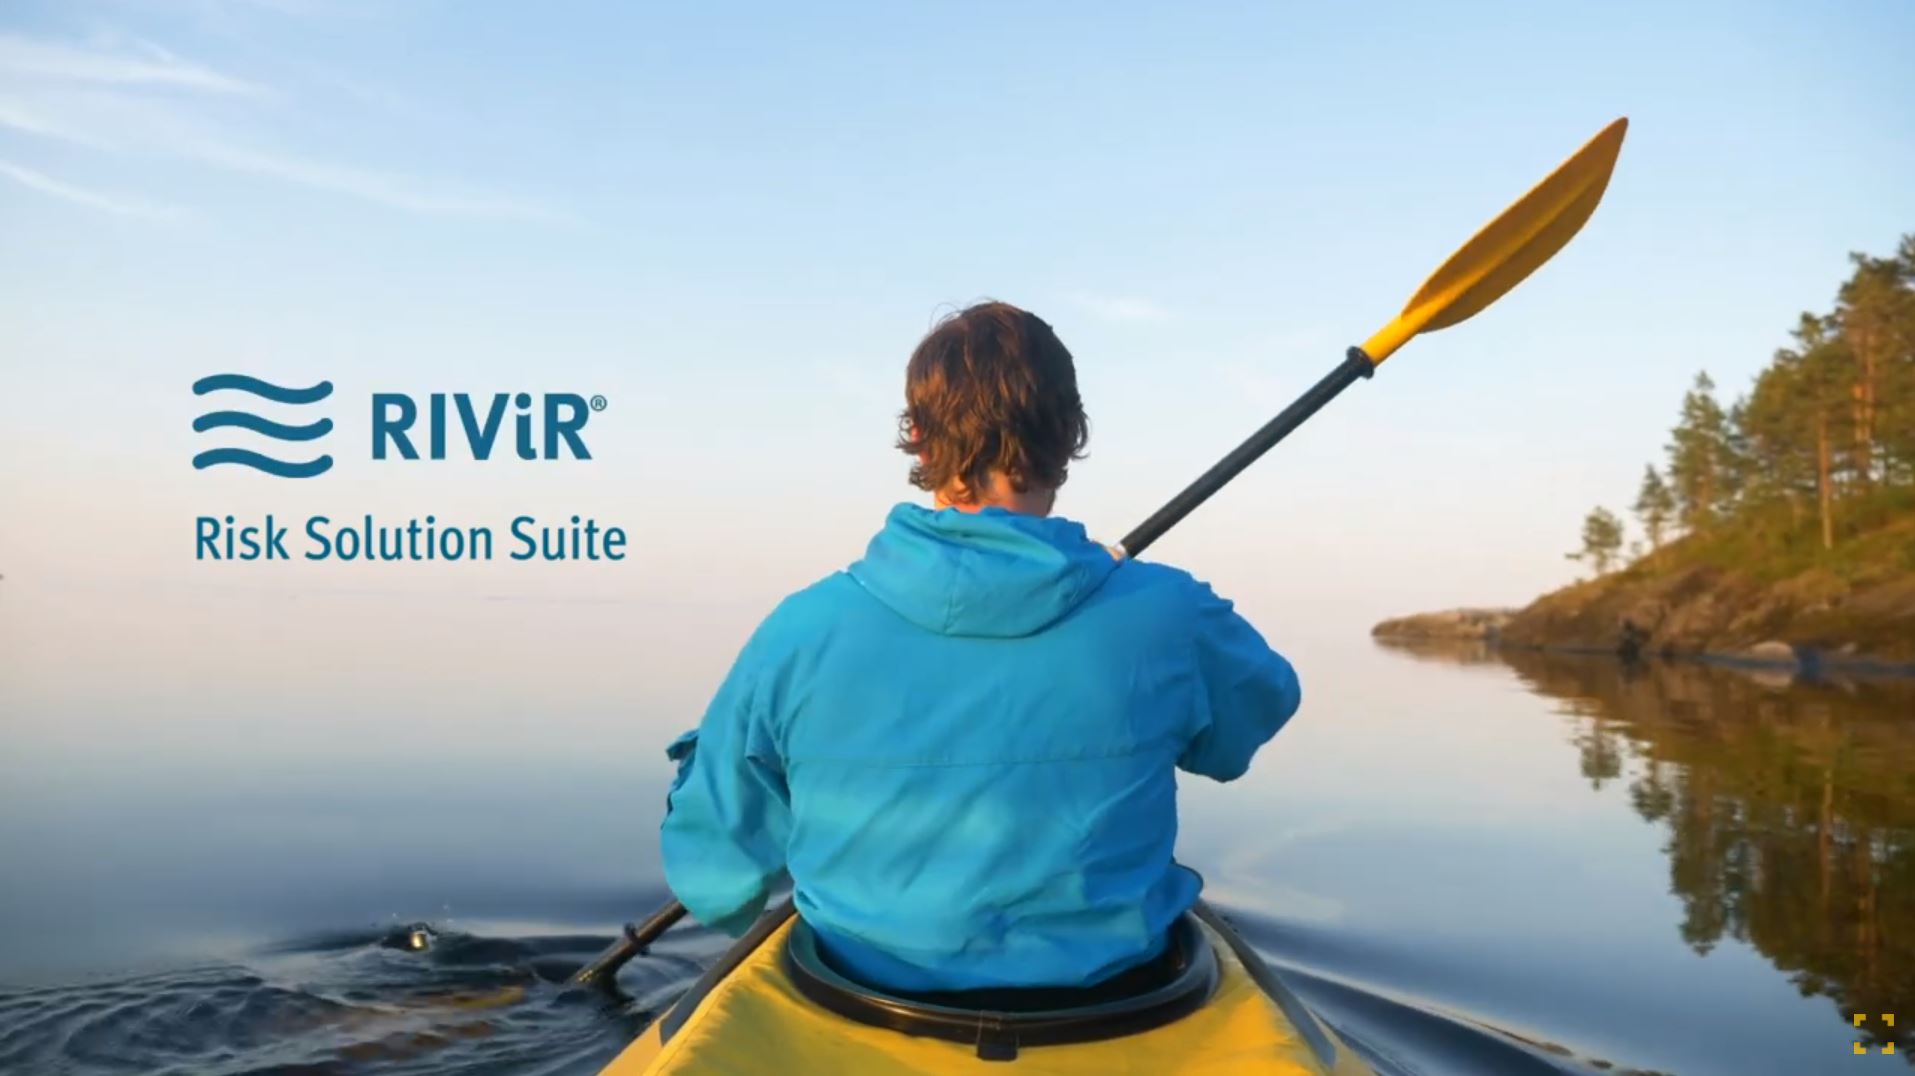 Kayaker on calm water with RIViR logo